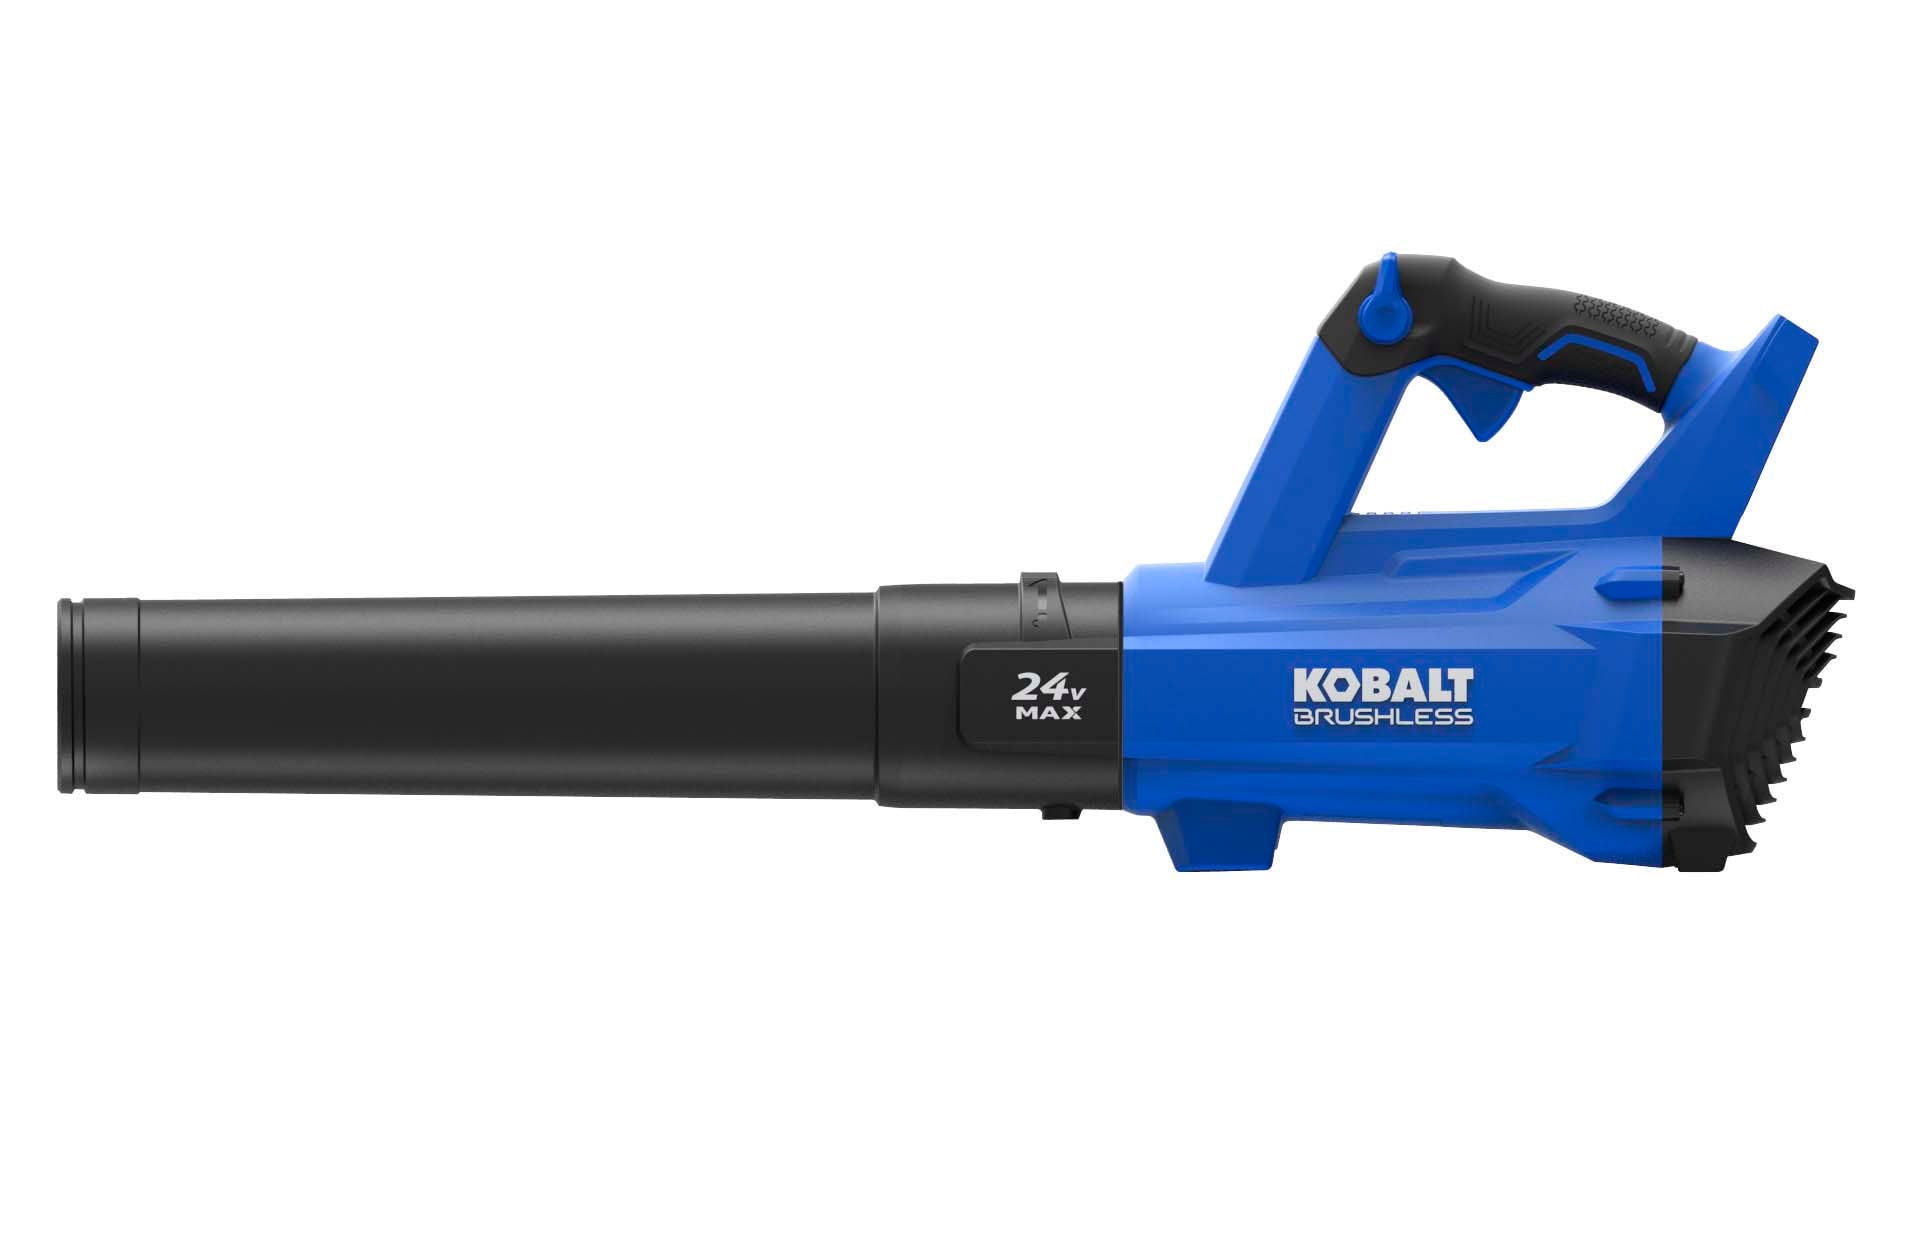 Kobalt 24 Volt Max 100 Mph Brushless Handheld Cordless Electric Leaf